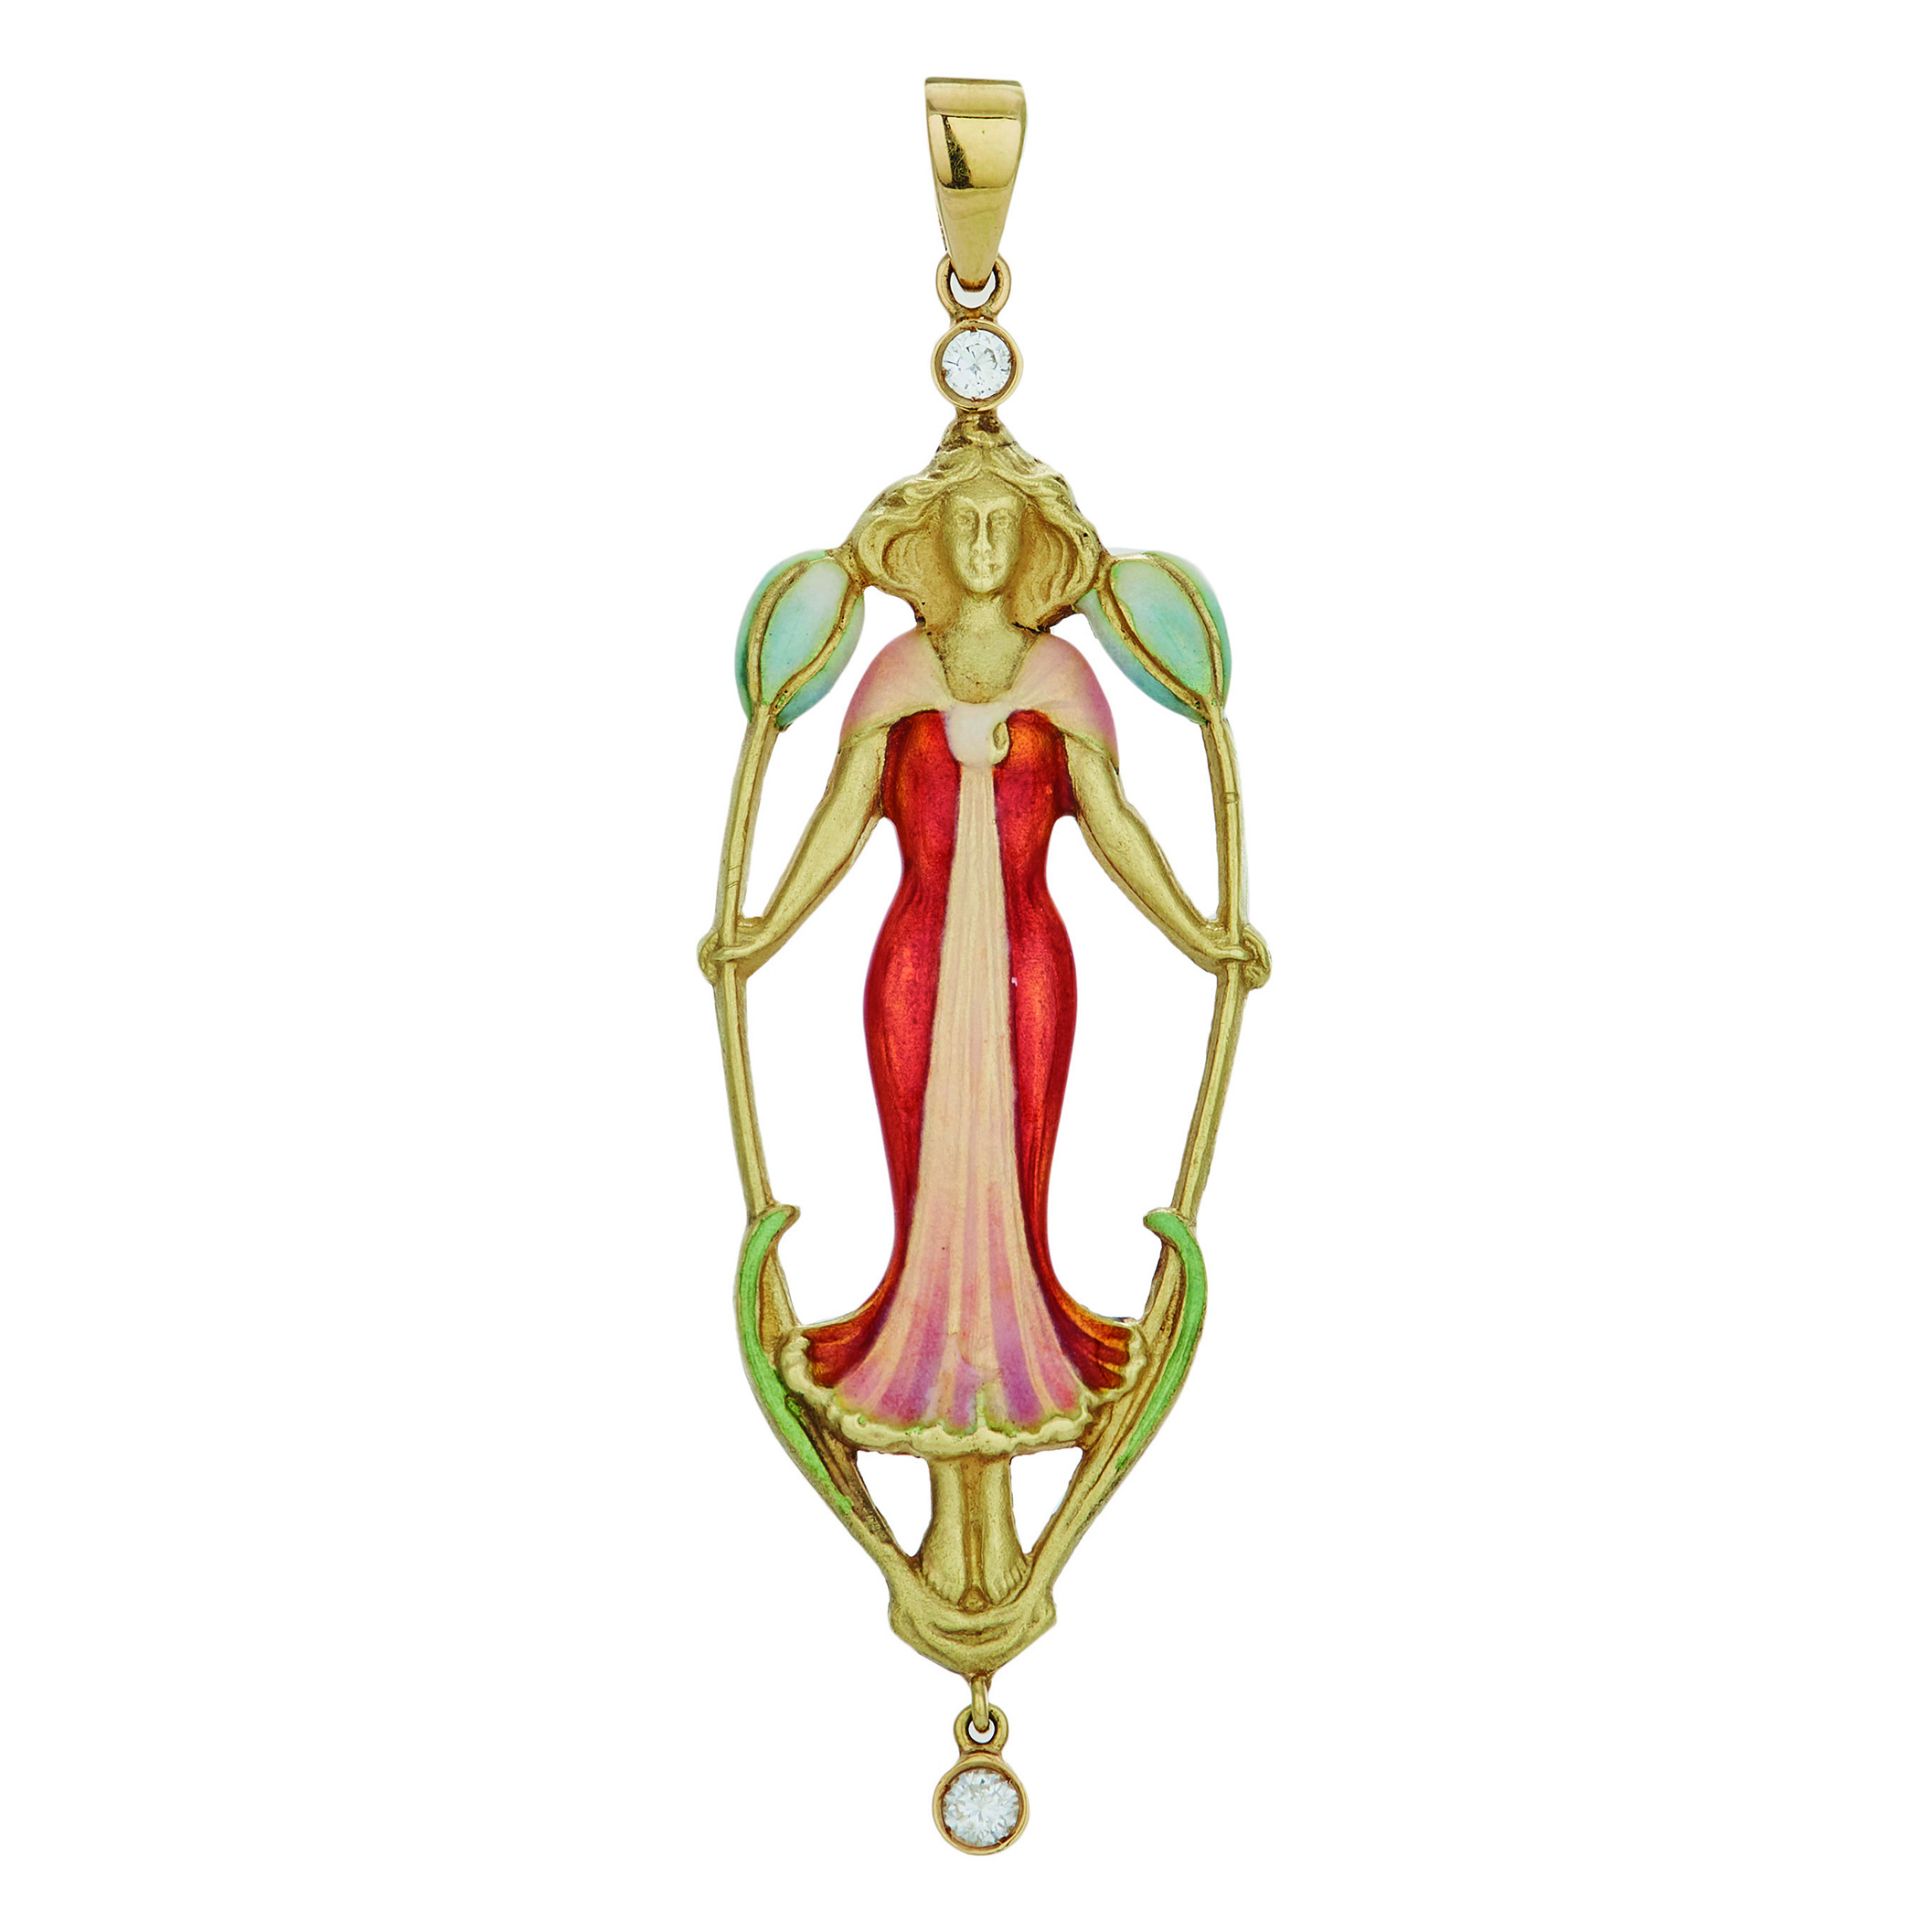 Art Nouveau style, gold, enamel and diamonds pendant.